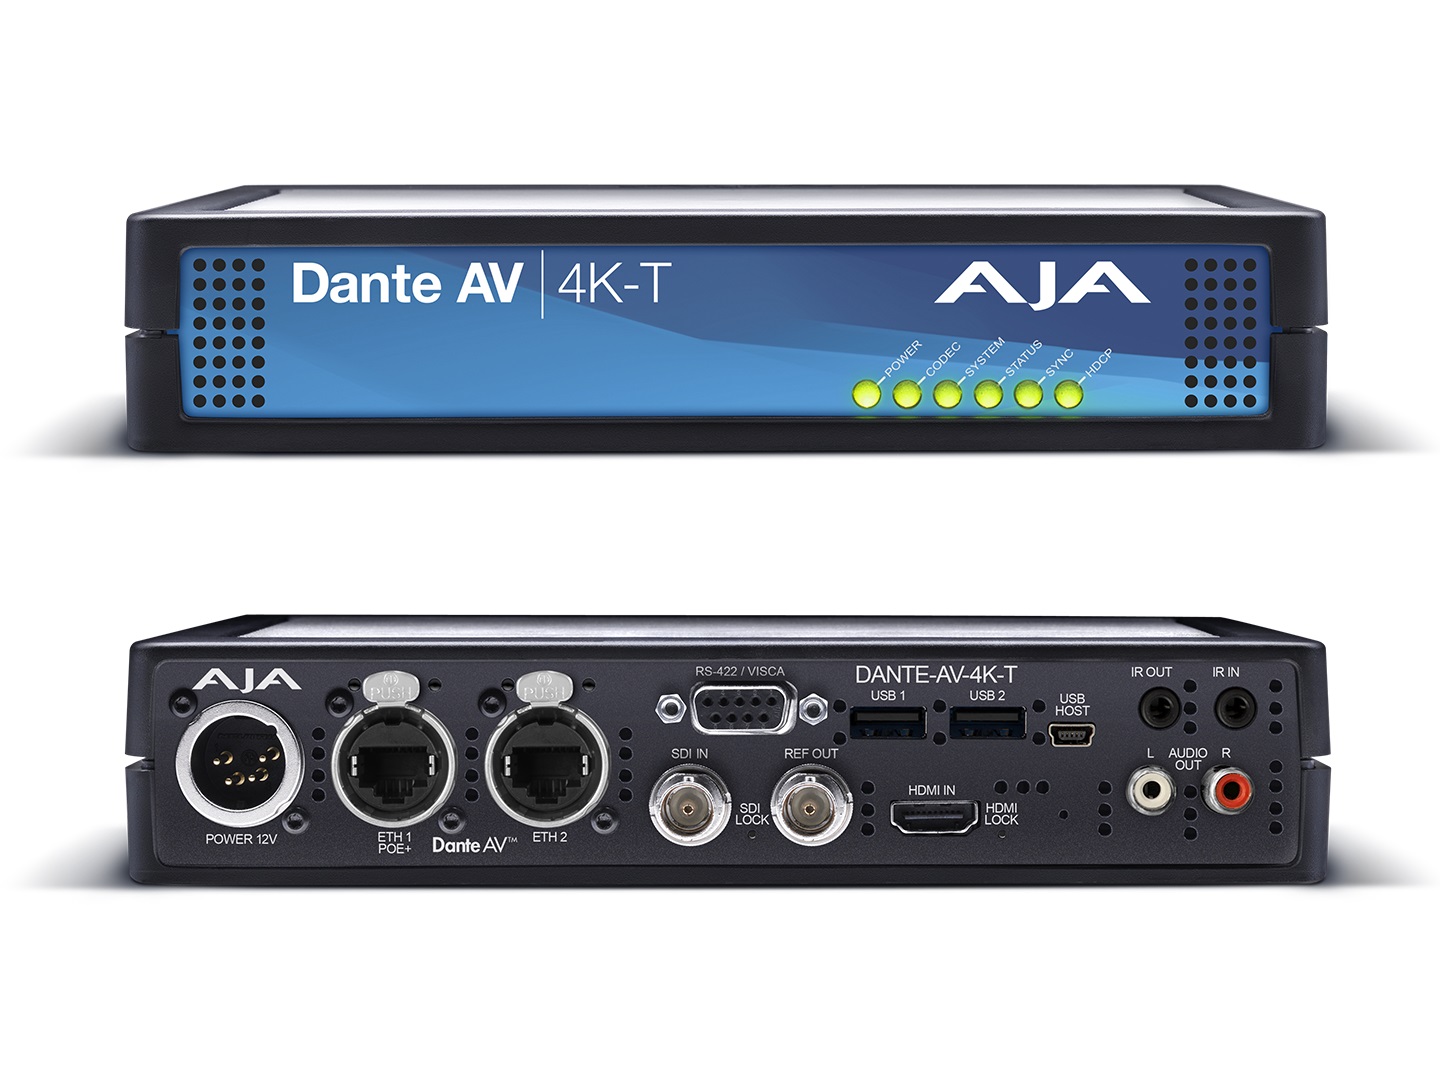 AJA DANTE-AV-4K-T Encode 12G/HDMI Video with Embedded Audio into Dante AV Ultra JPEG 2000 (Transmitter)